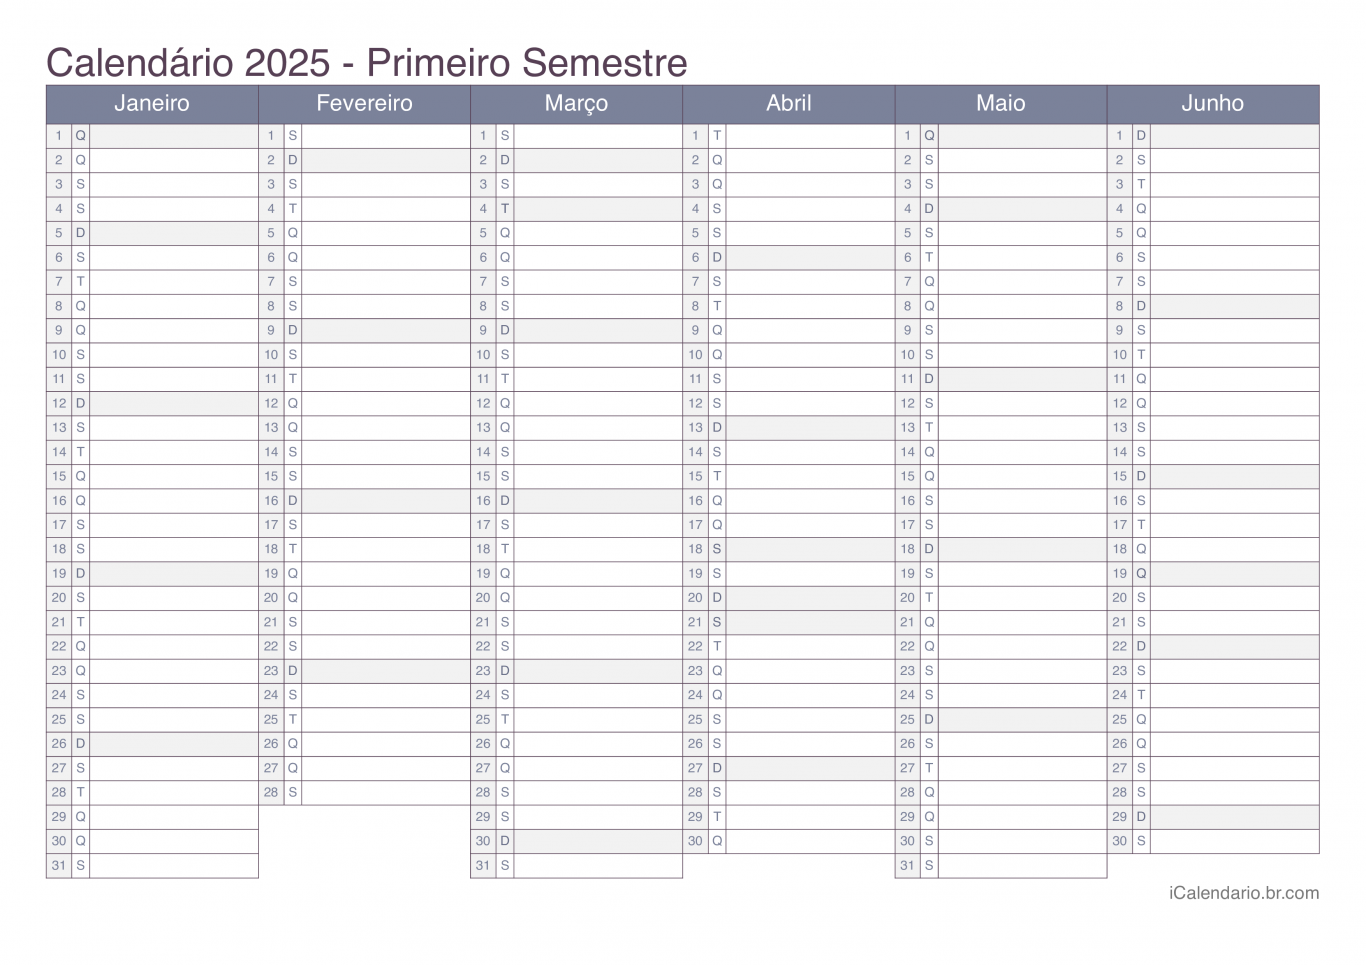 Calendário por semestre 2025 - Office